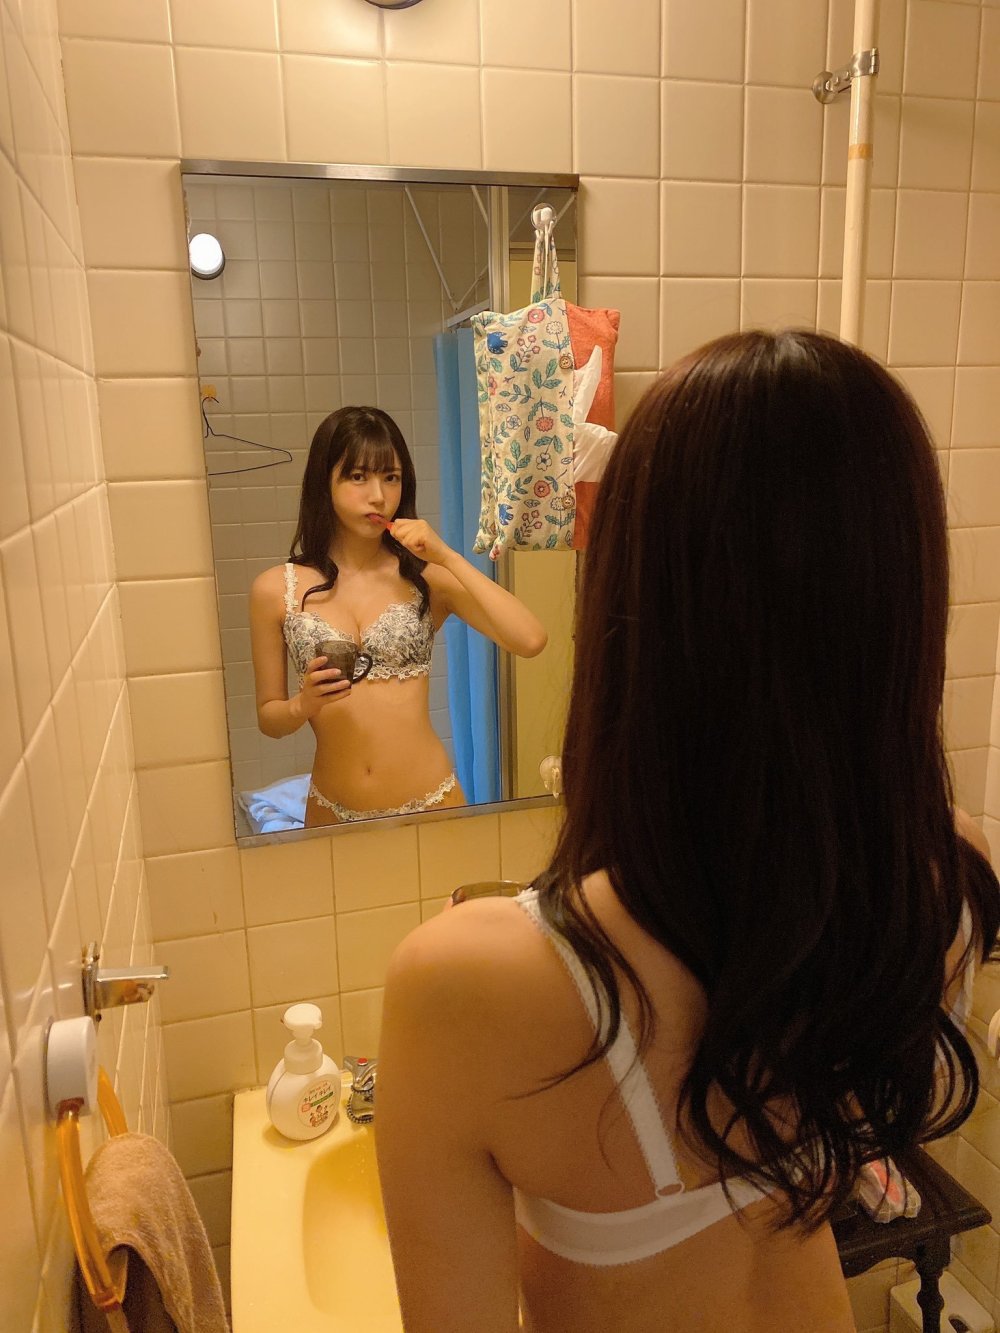 枫花恋 Sexy and Hottest Photos , Latest Pics